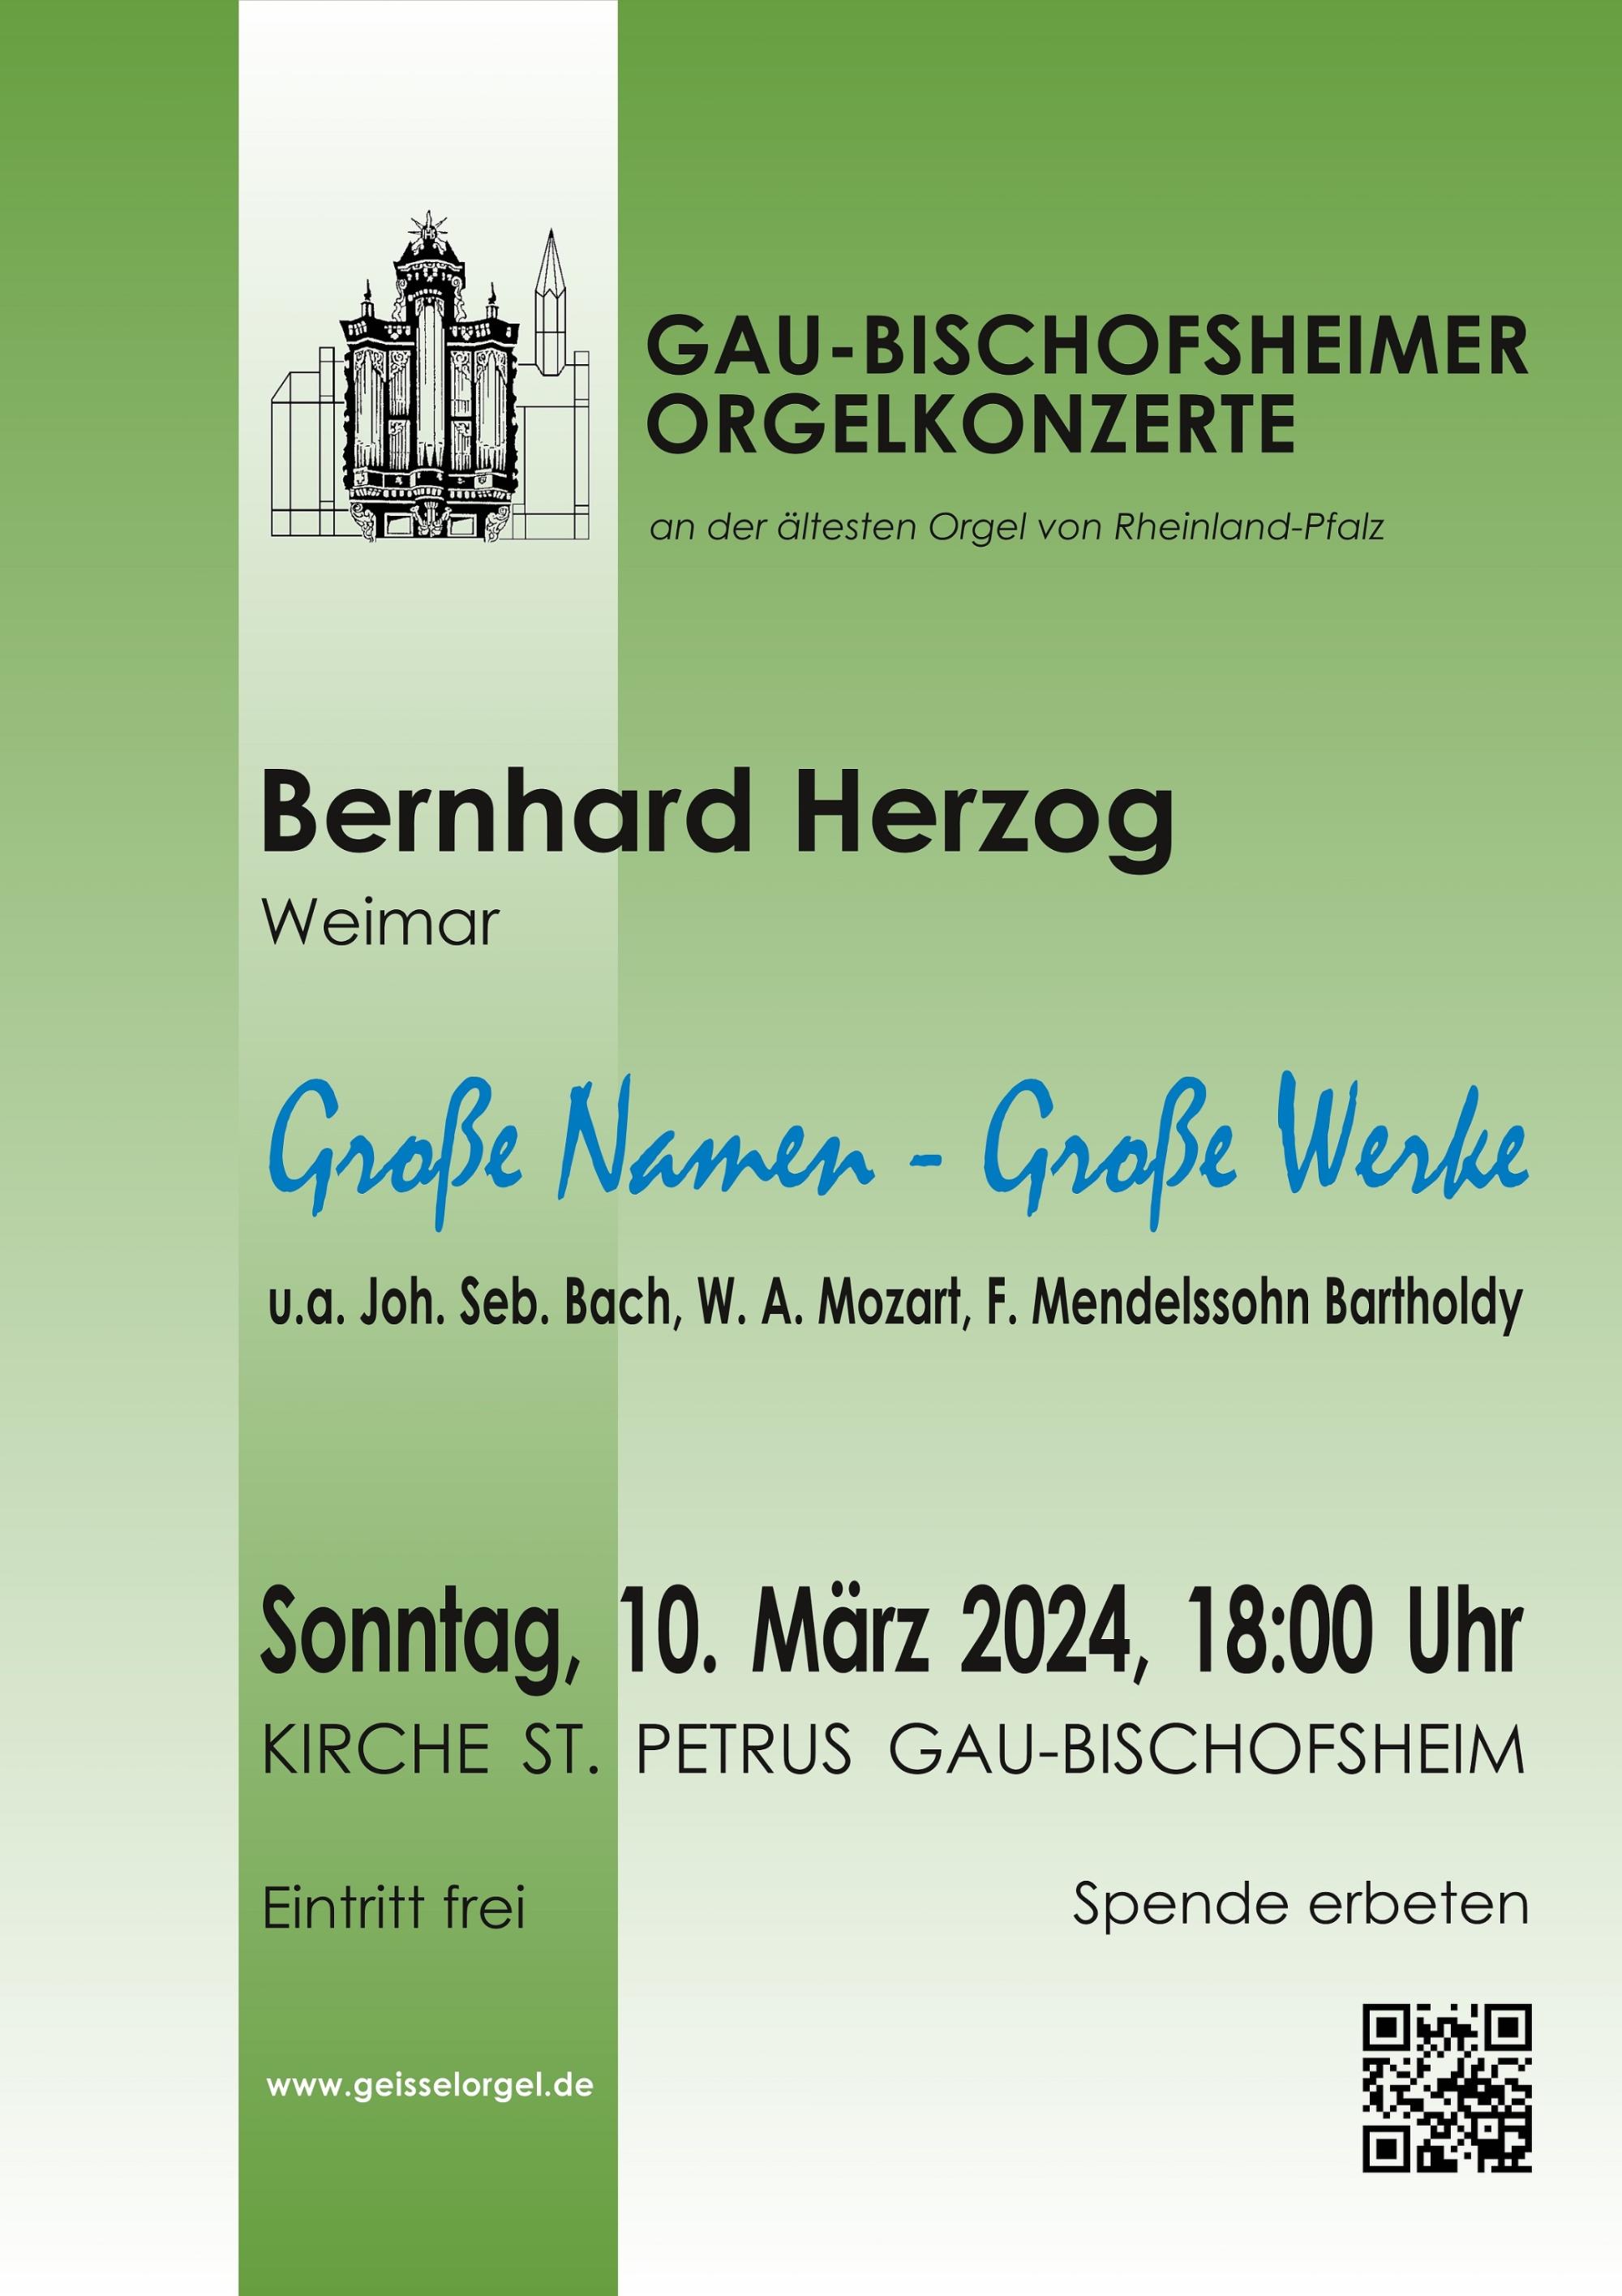 Bernhard Herzog Plakat